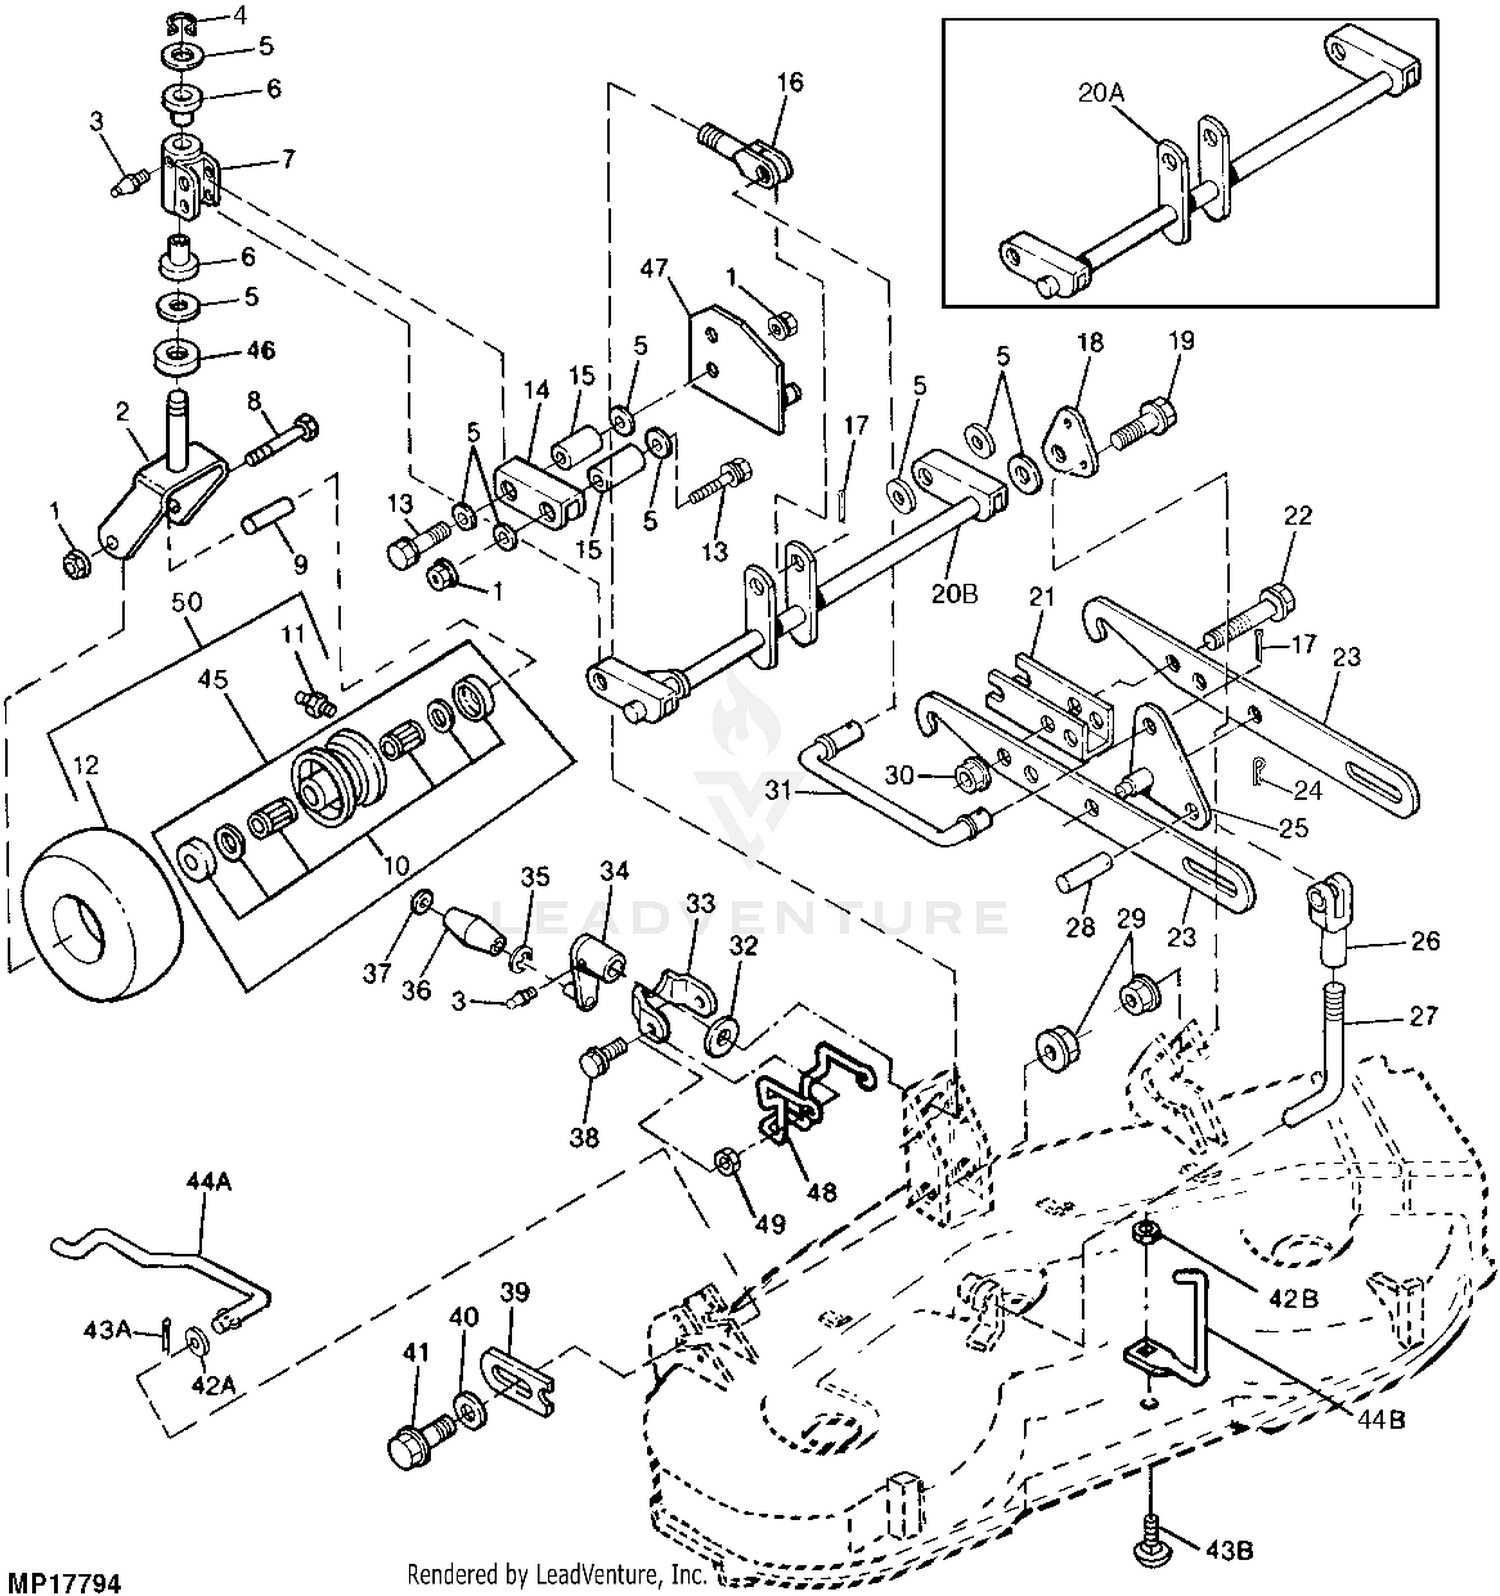 John Deere Parts Lookup - Weingartz